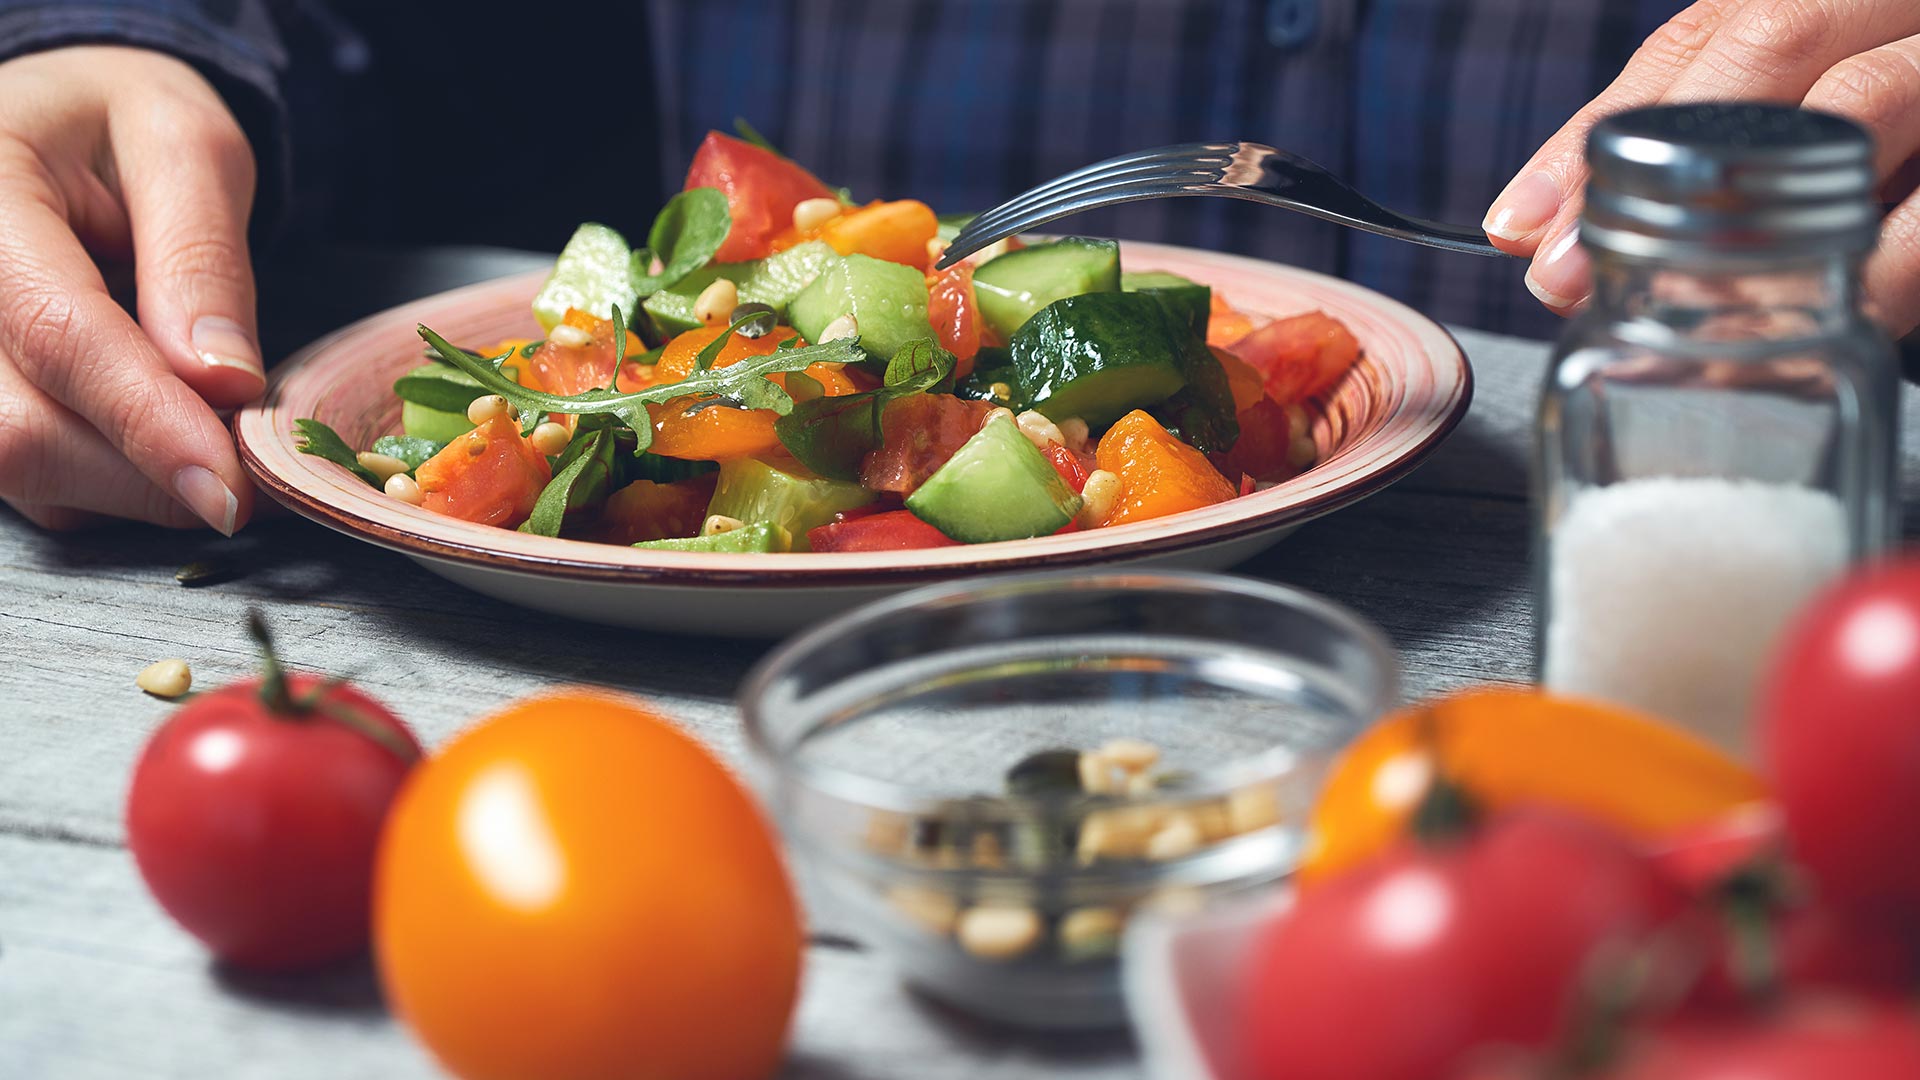 La dieta mediterránea se ha relacionado anteriormente con la reducción de la presión arterial y una mejor salud cardiovascular (Getty Images)